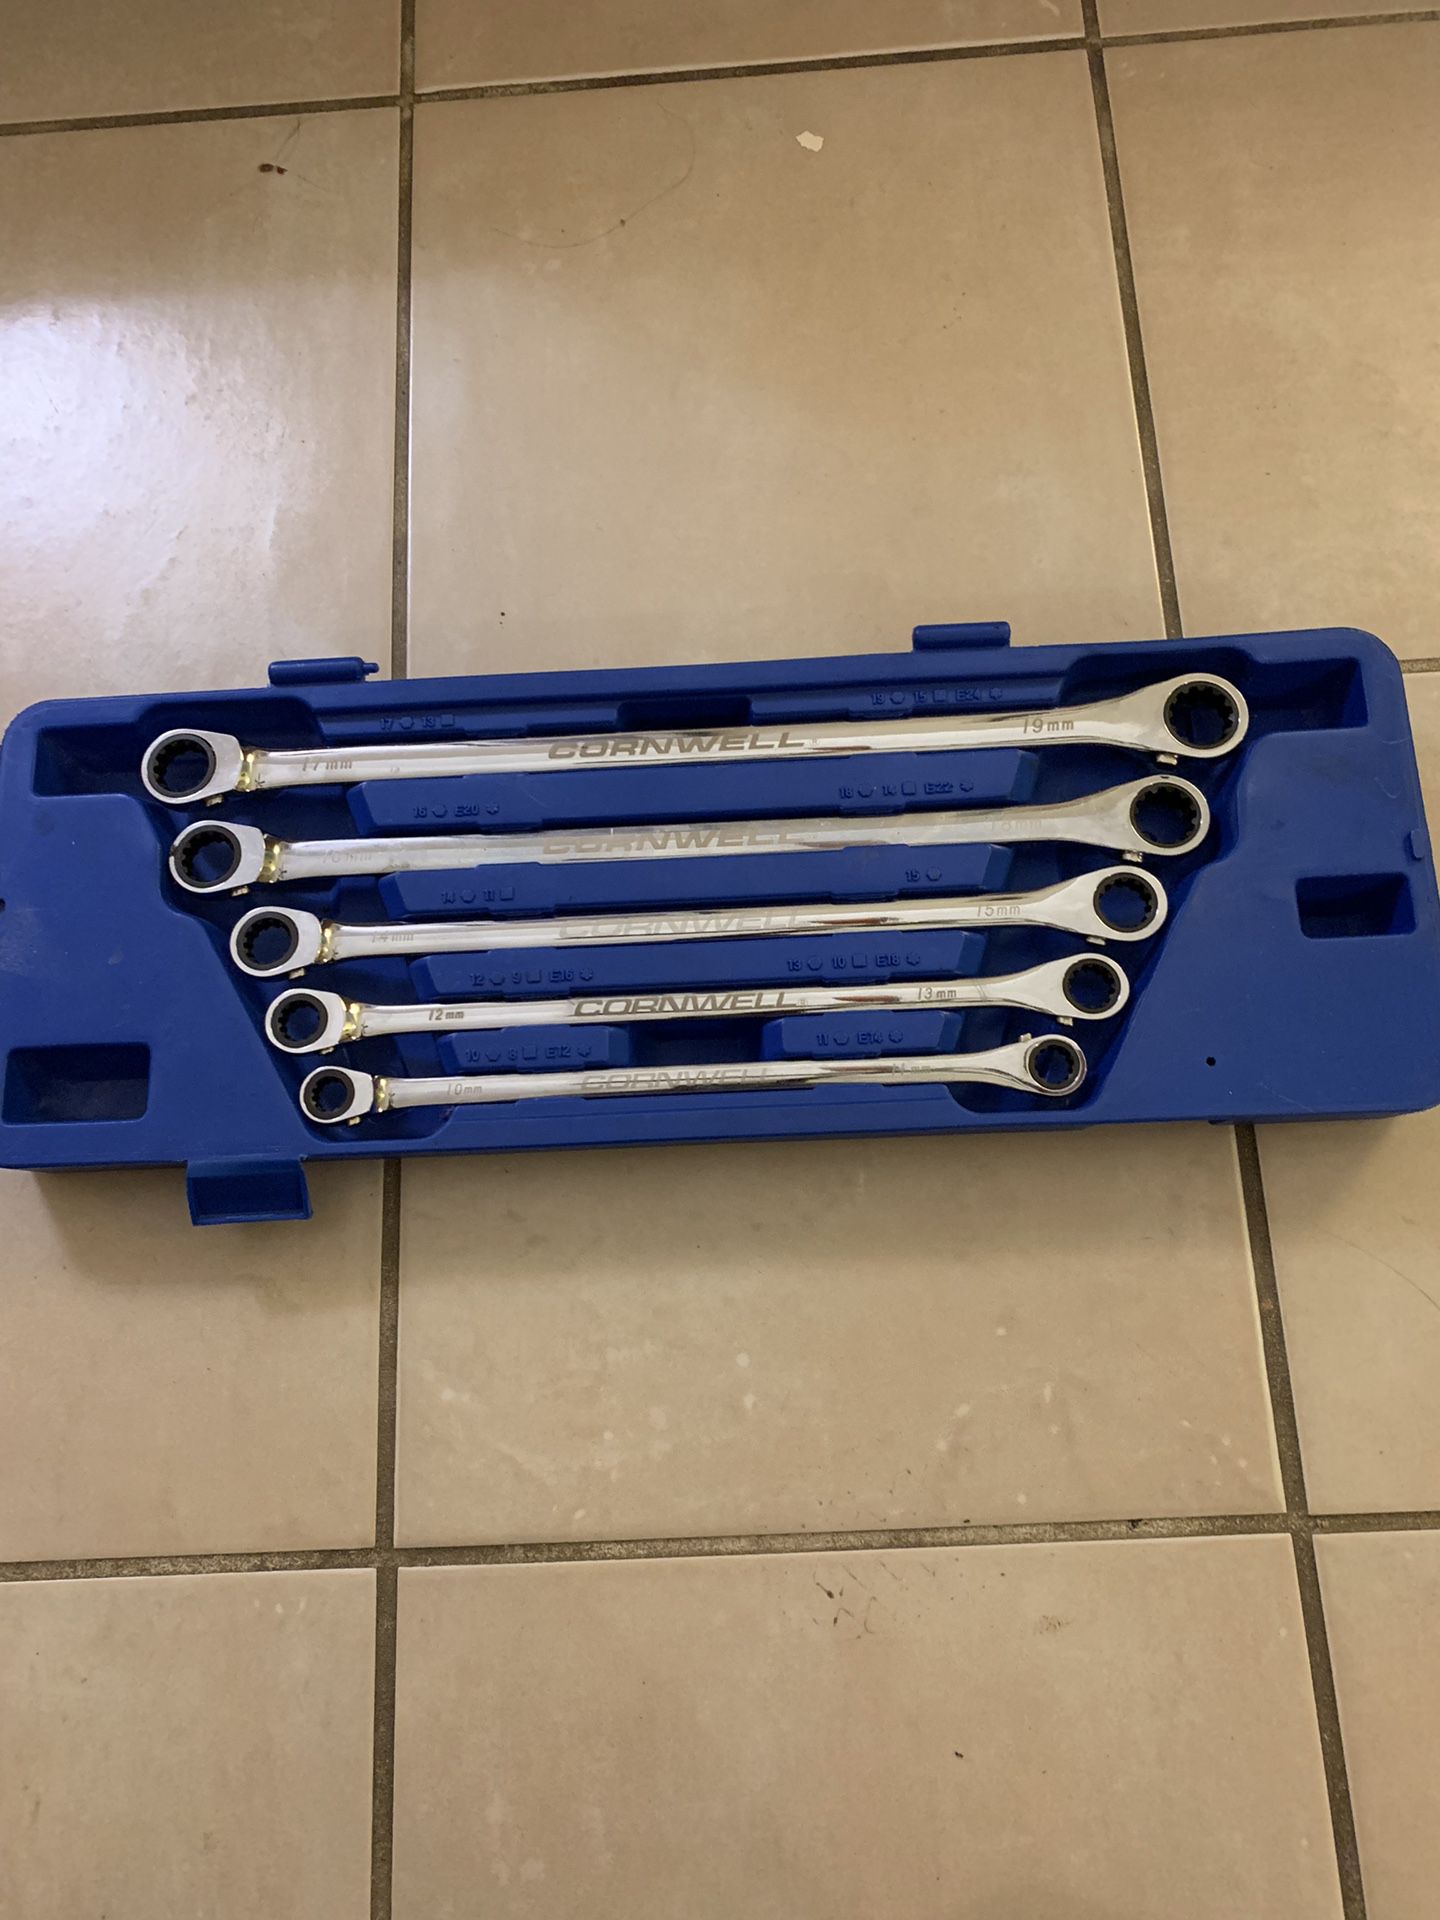 CornWell Metric Ratcheting Wrench Set